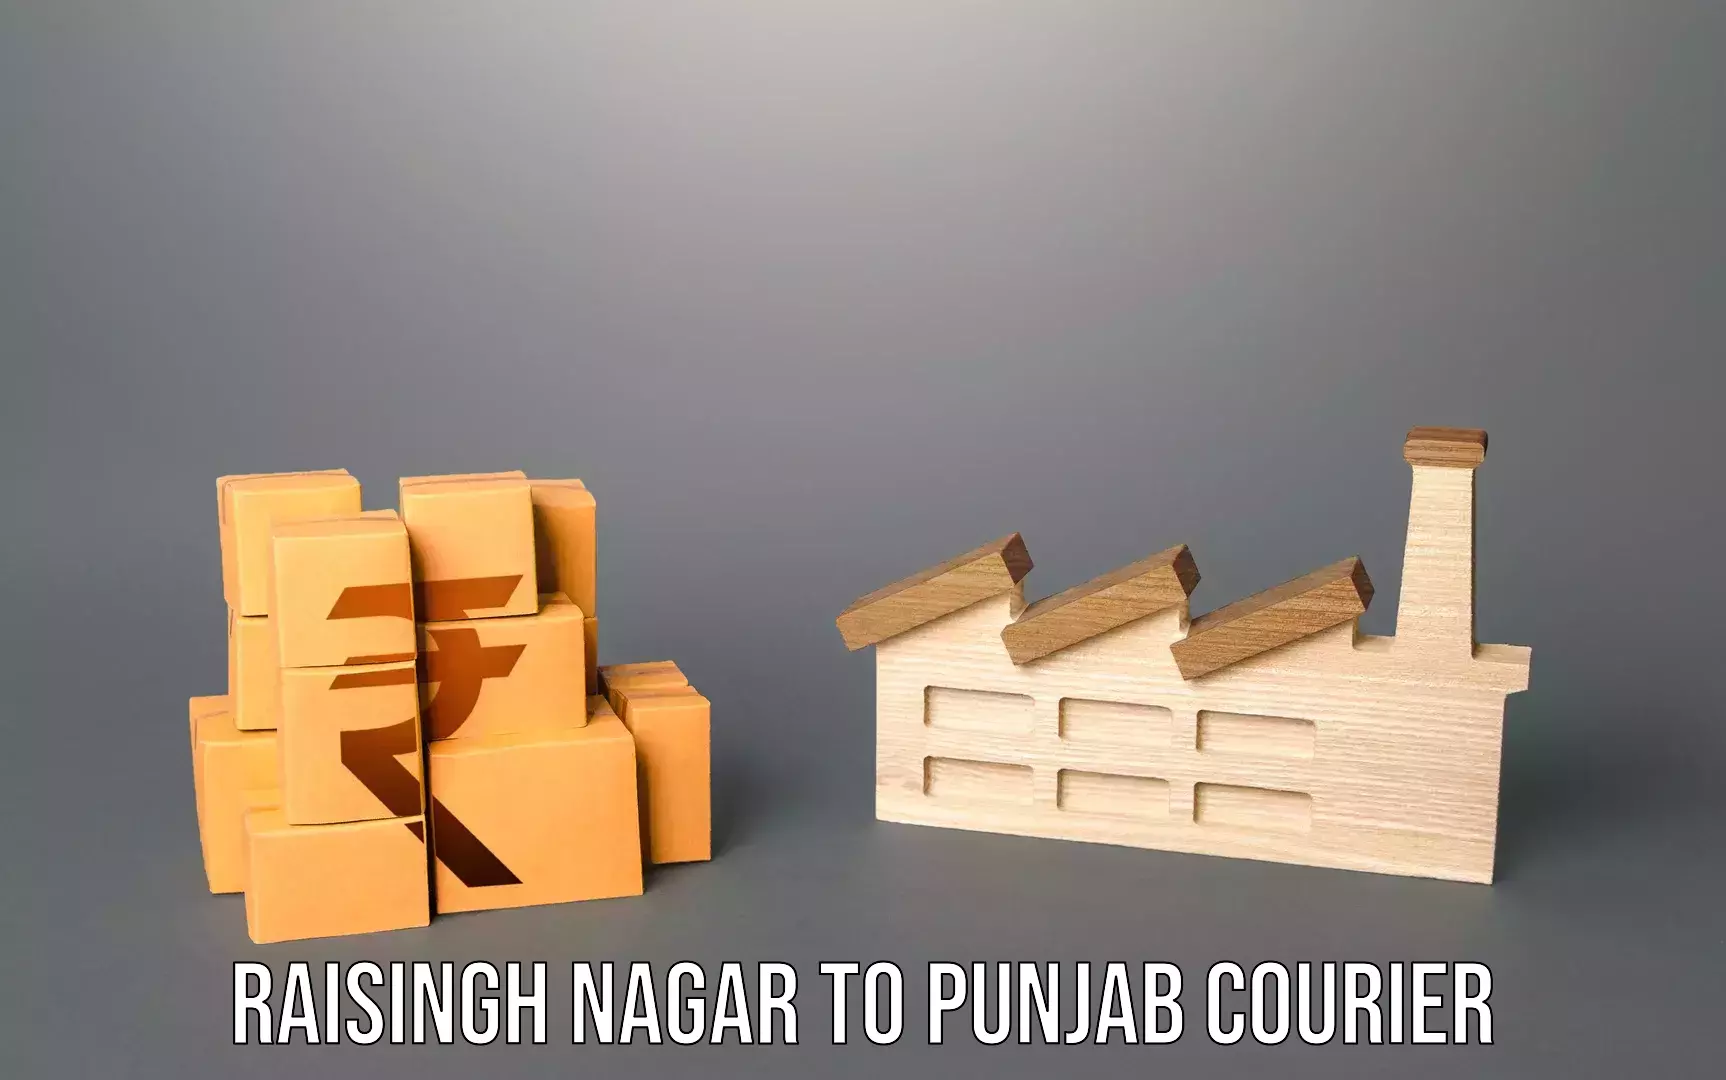 Luggage transit service Raisingh Nagar to Punjab